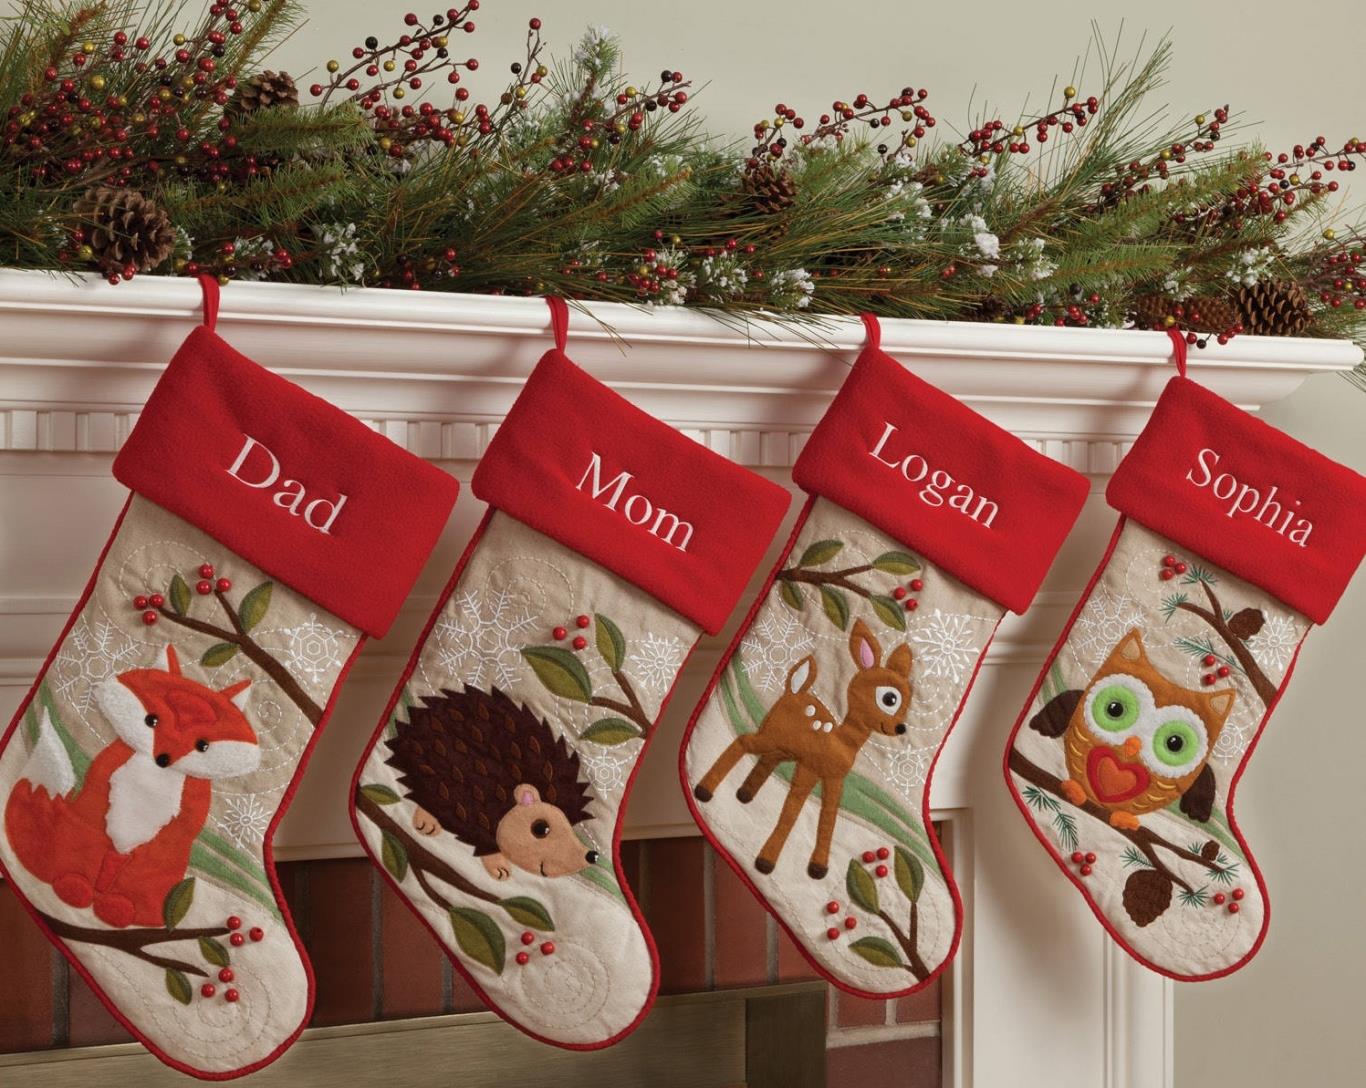 11. Tập tục tặng quà trong những chiếc bít tất (Christmas stockings)